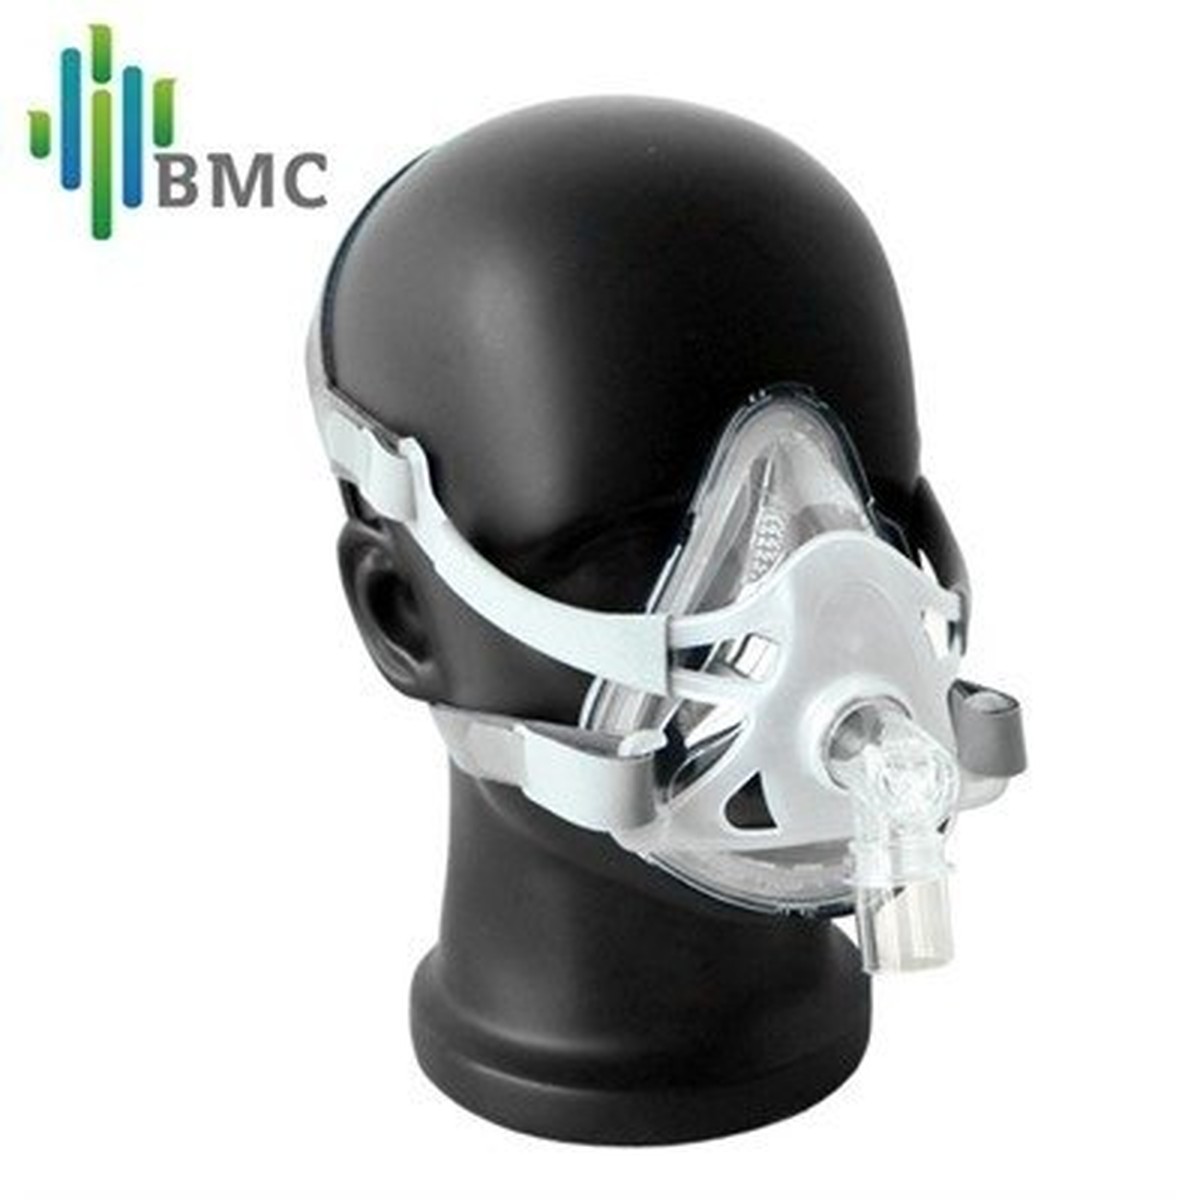 Foto do produto Máscara CPAP APAP F1A Full Face Oronasal Mask BMC